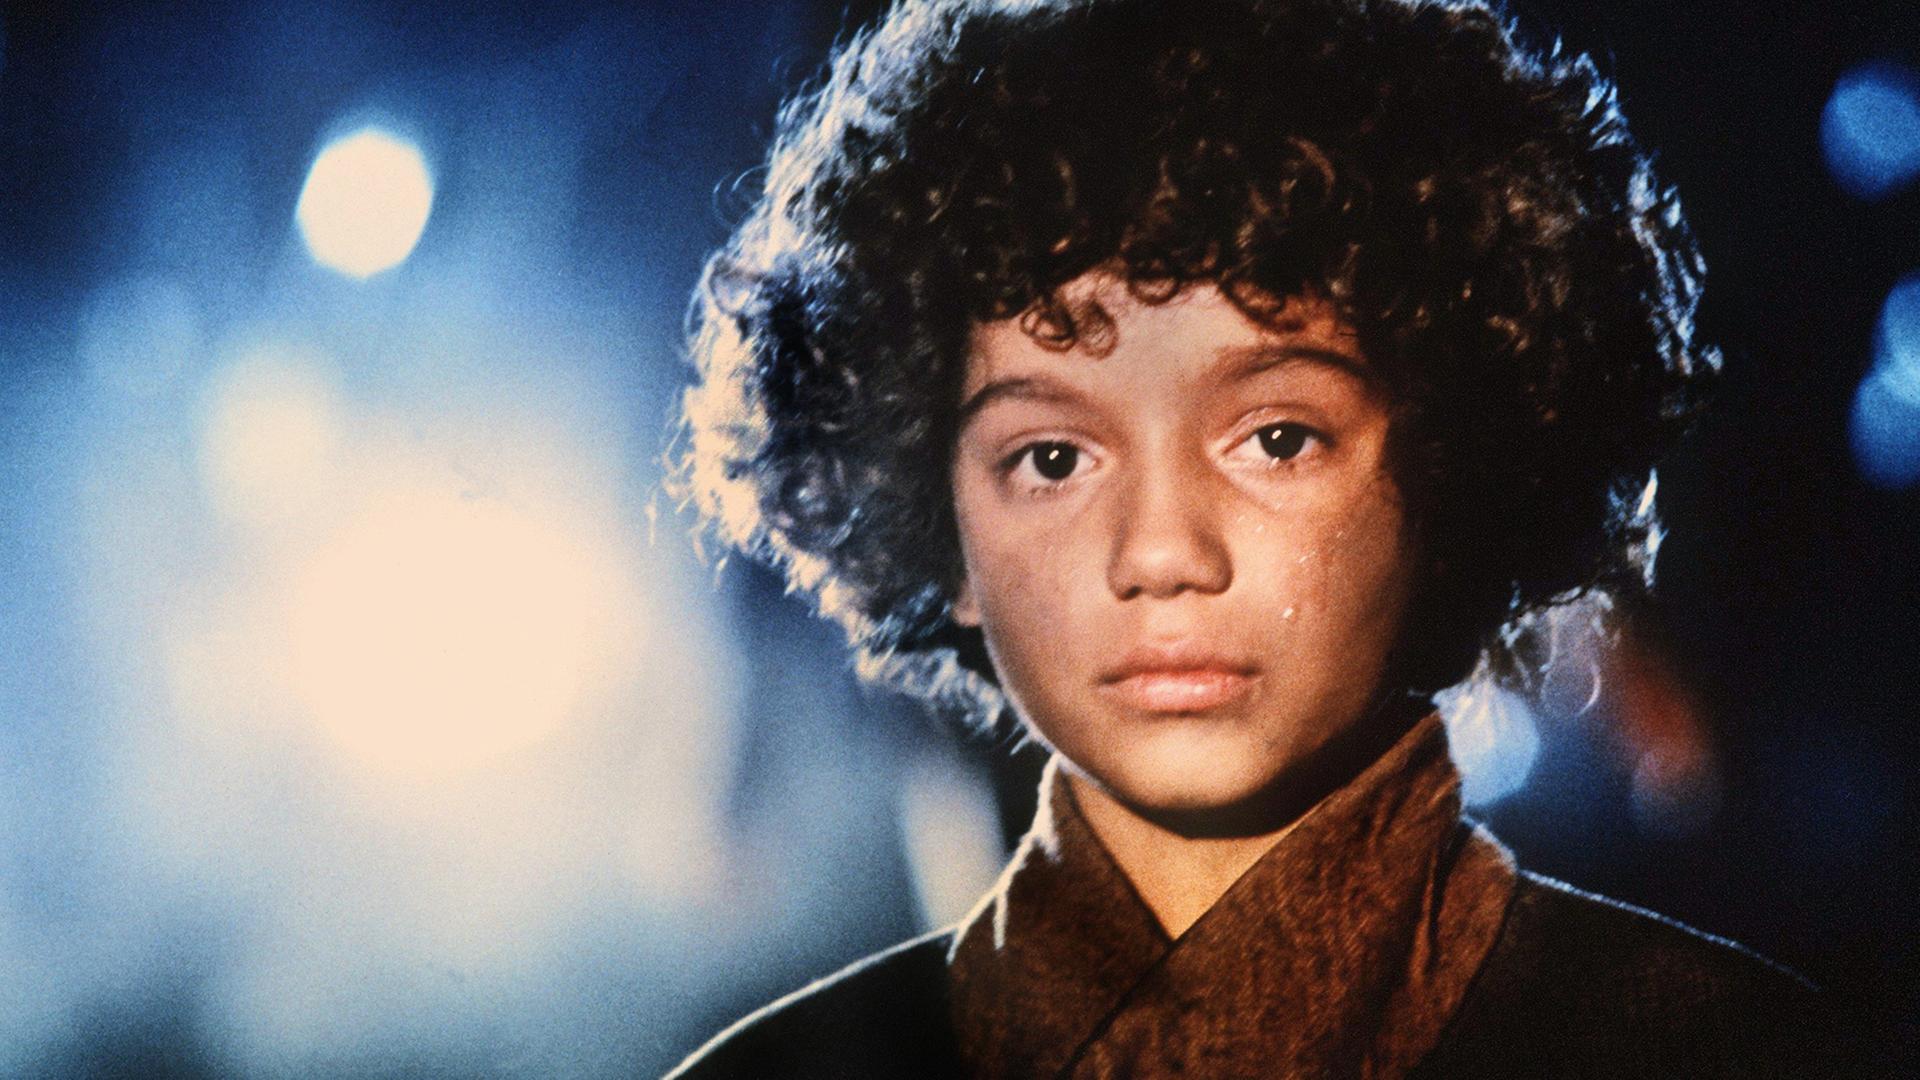 Die junge Schauspielerin Radost Bokel als "Momo" 1985 in der Realverfilmung des Kinderbuchklassiker von Michael Ende.